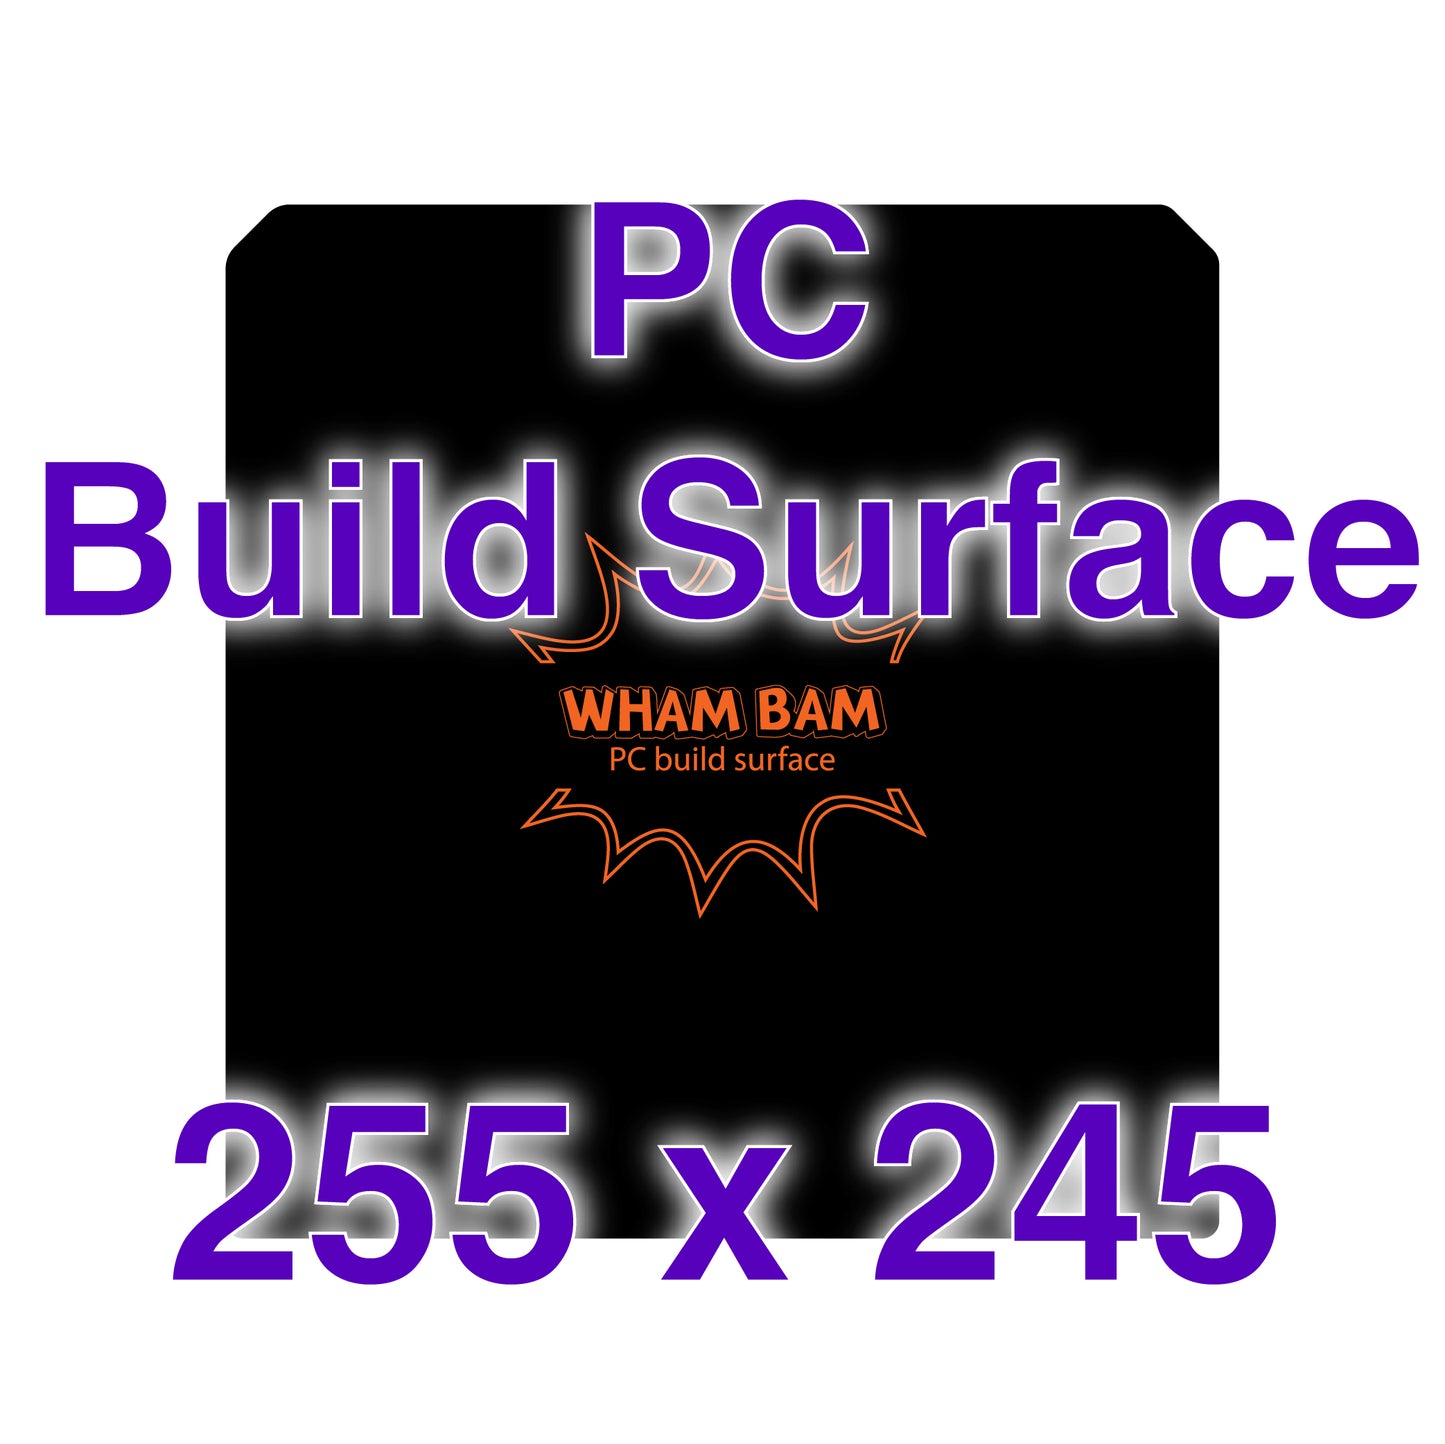 PC Build Surface - 255 x 245